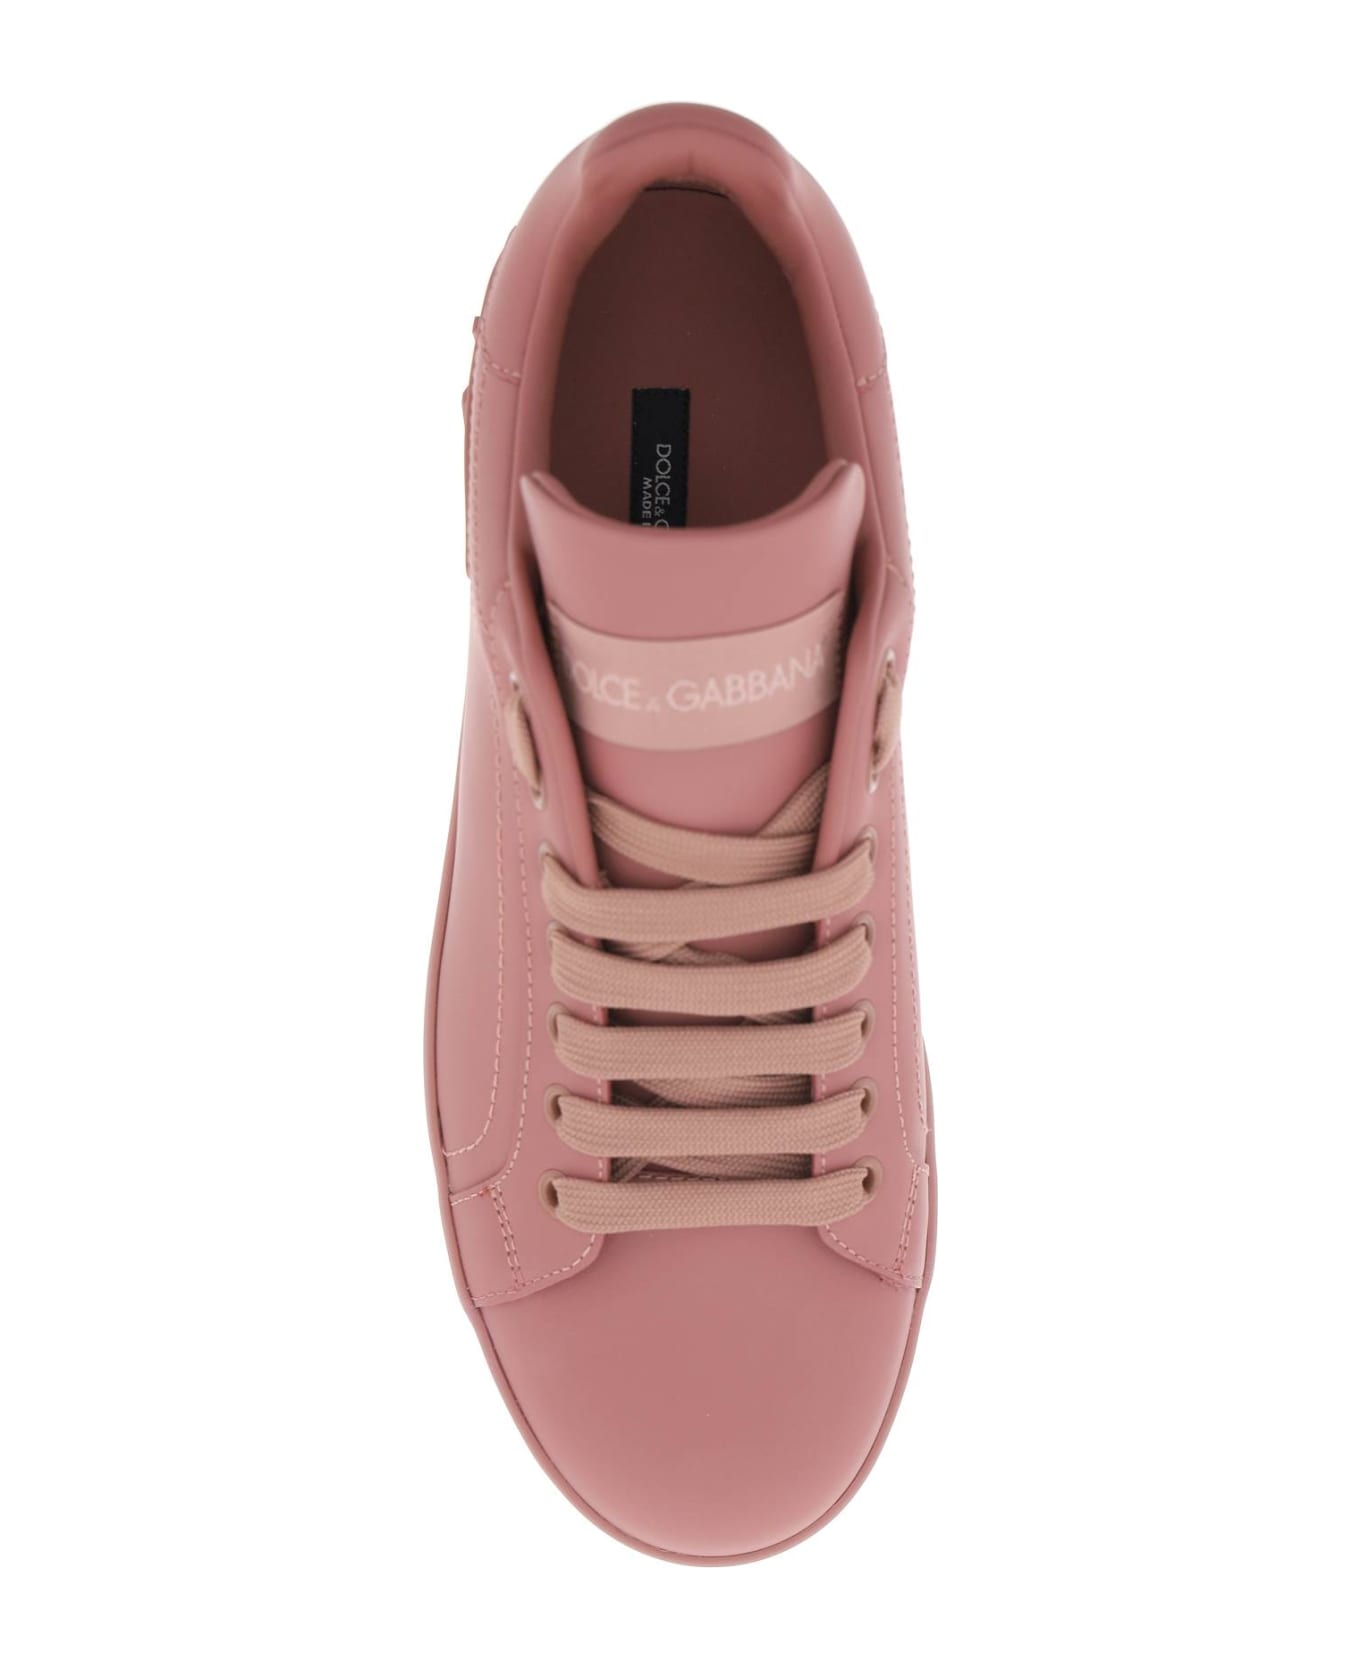 Dolce & Gabbana Portofino Leather Sneakers - Rosa antico スニーカー